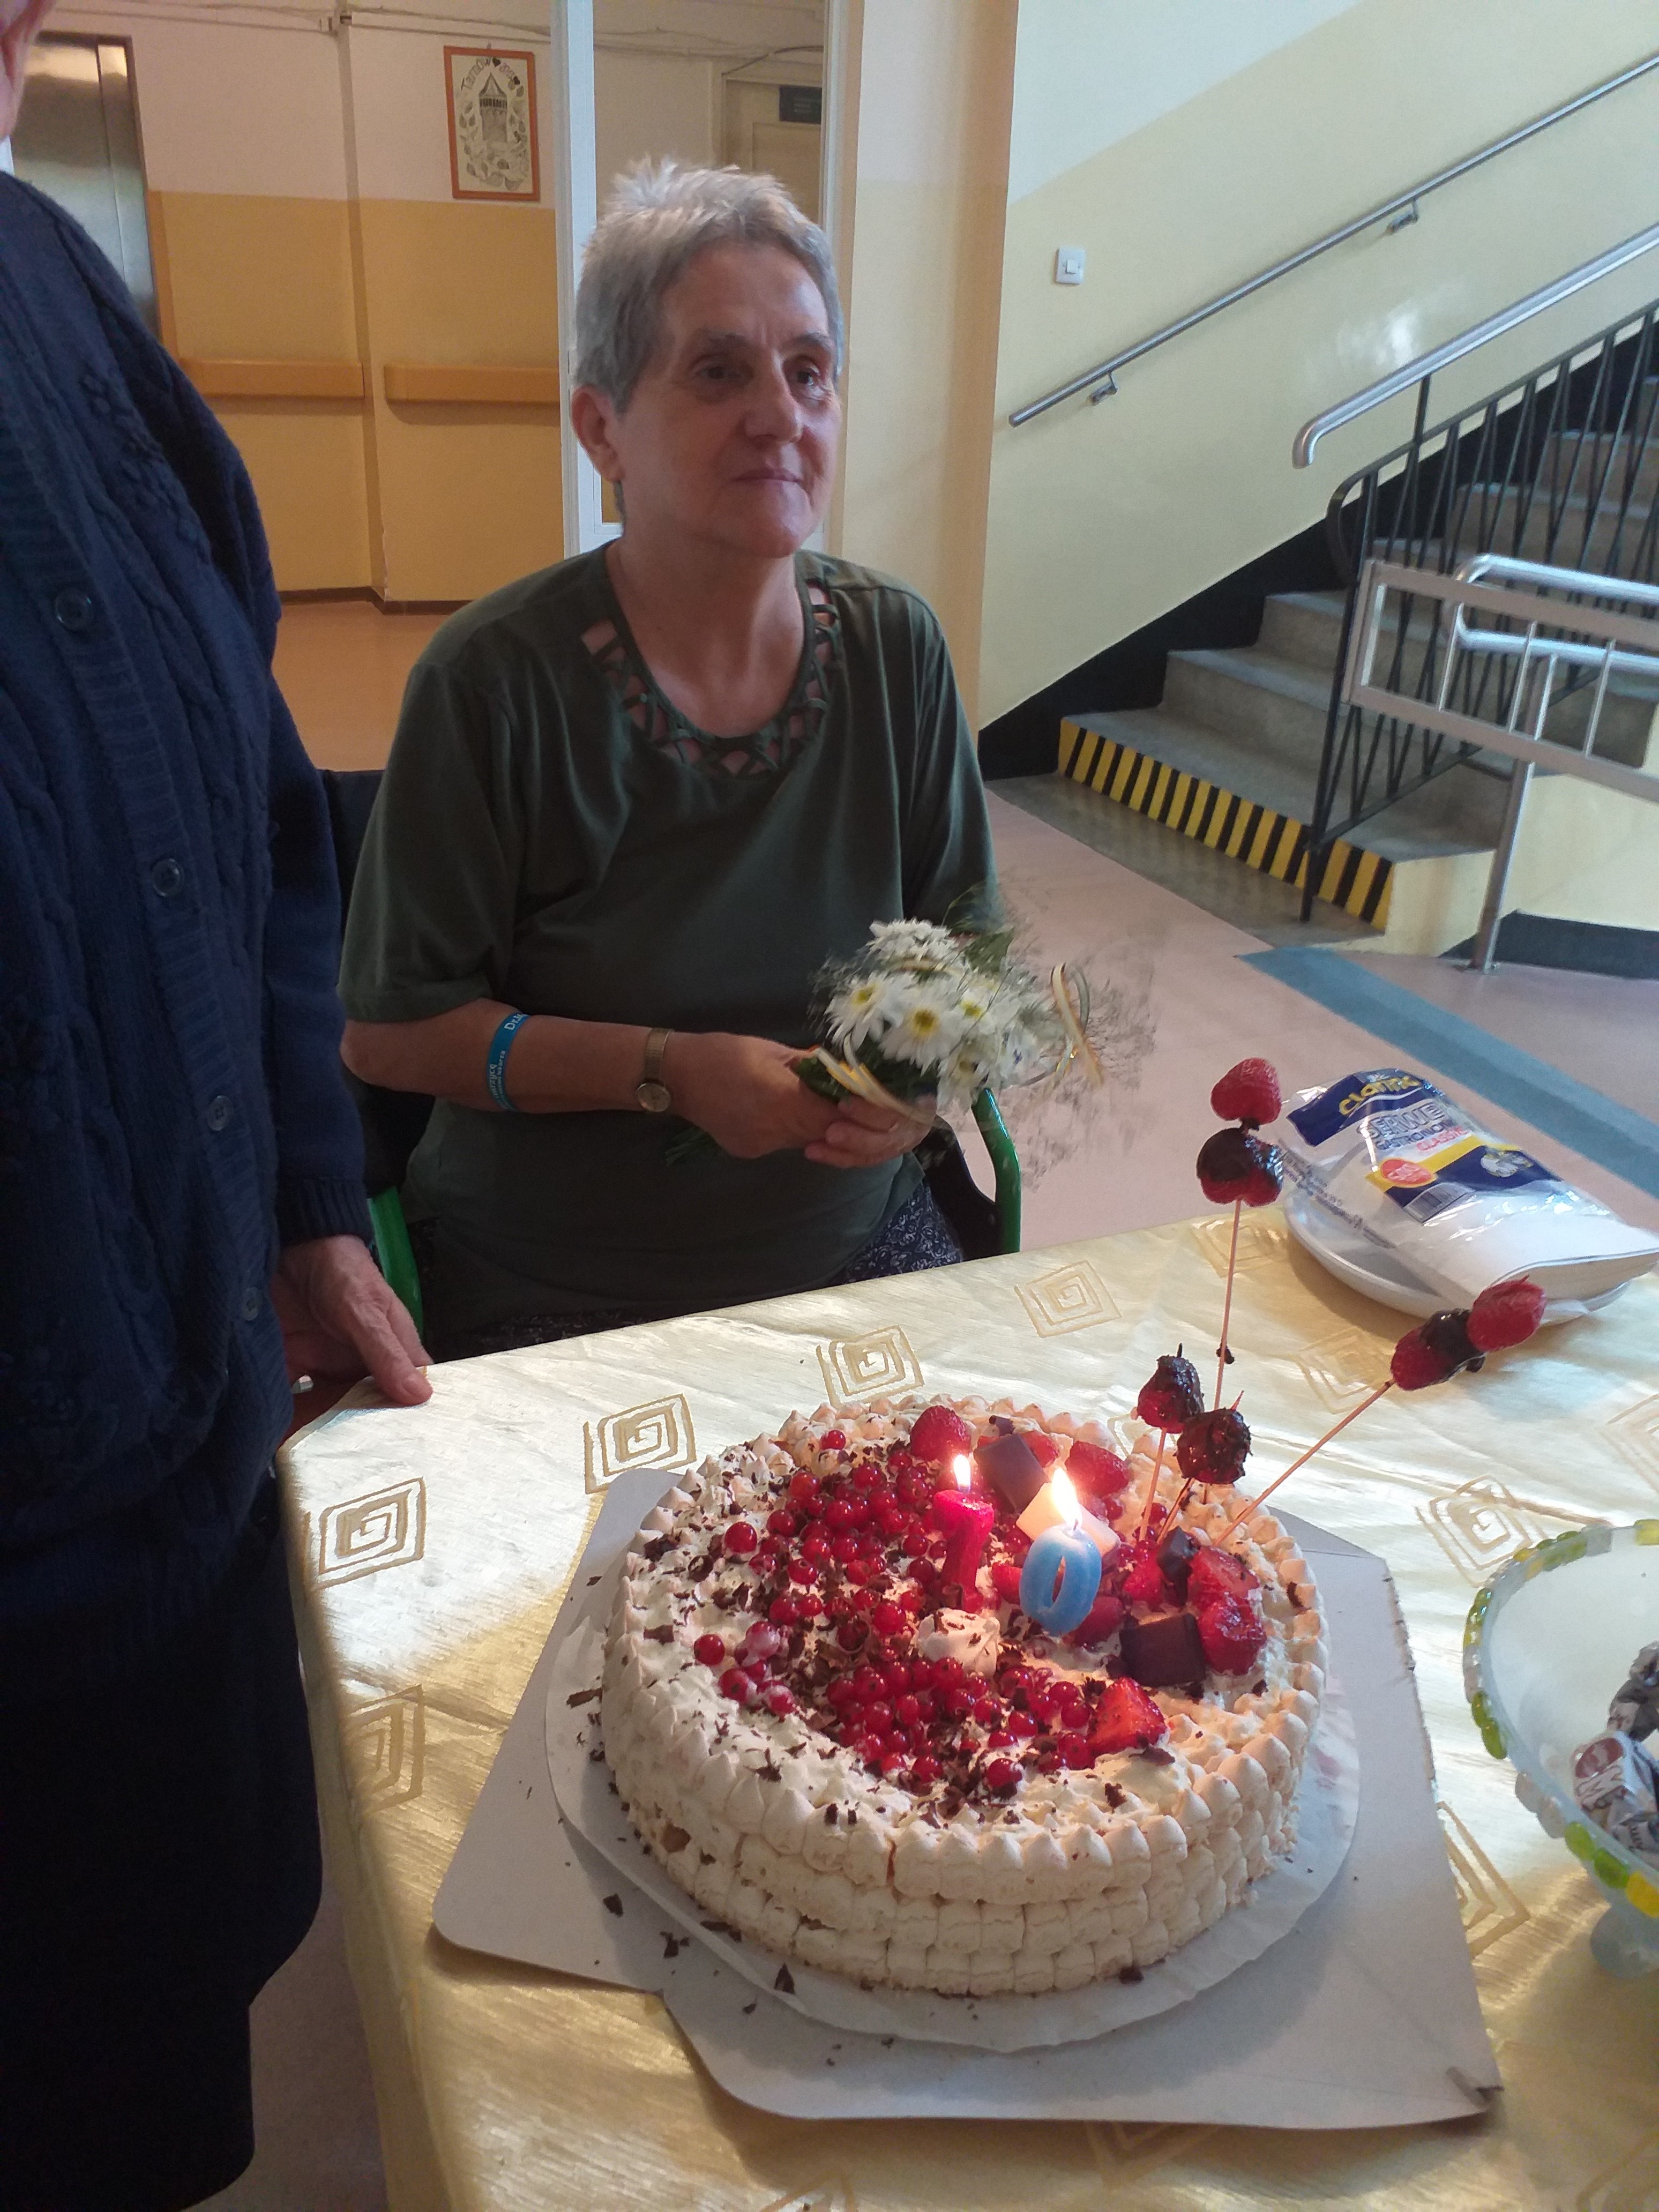 Seniorka siedzi przy stole, przed nią stoi tort urodzinowy